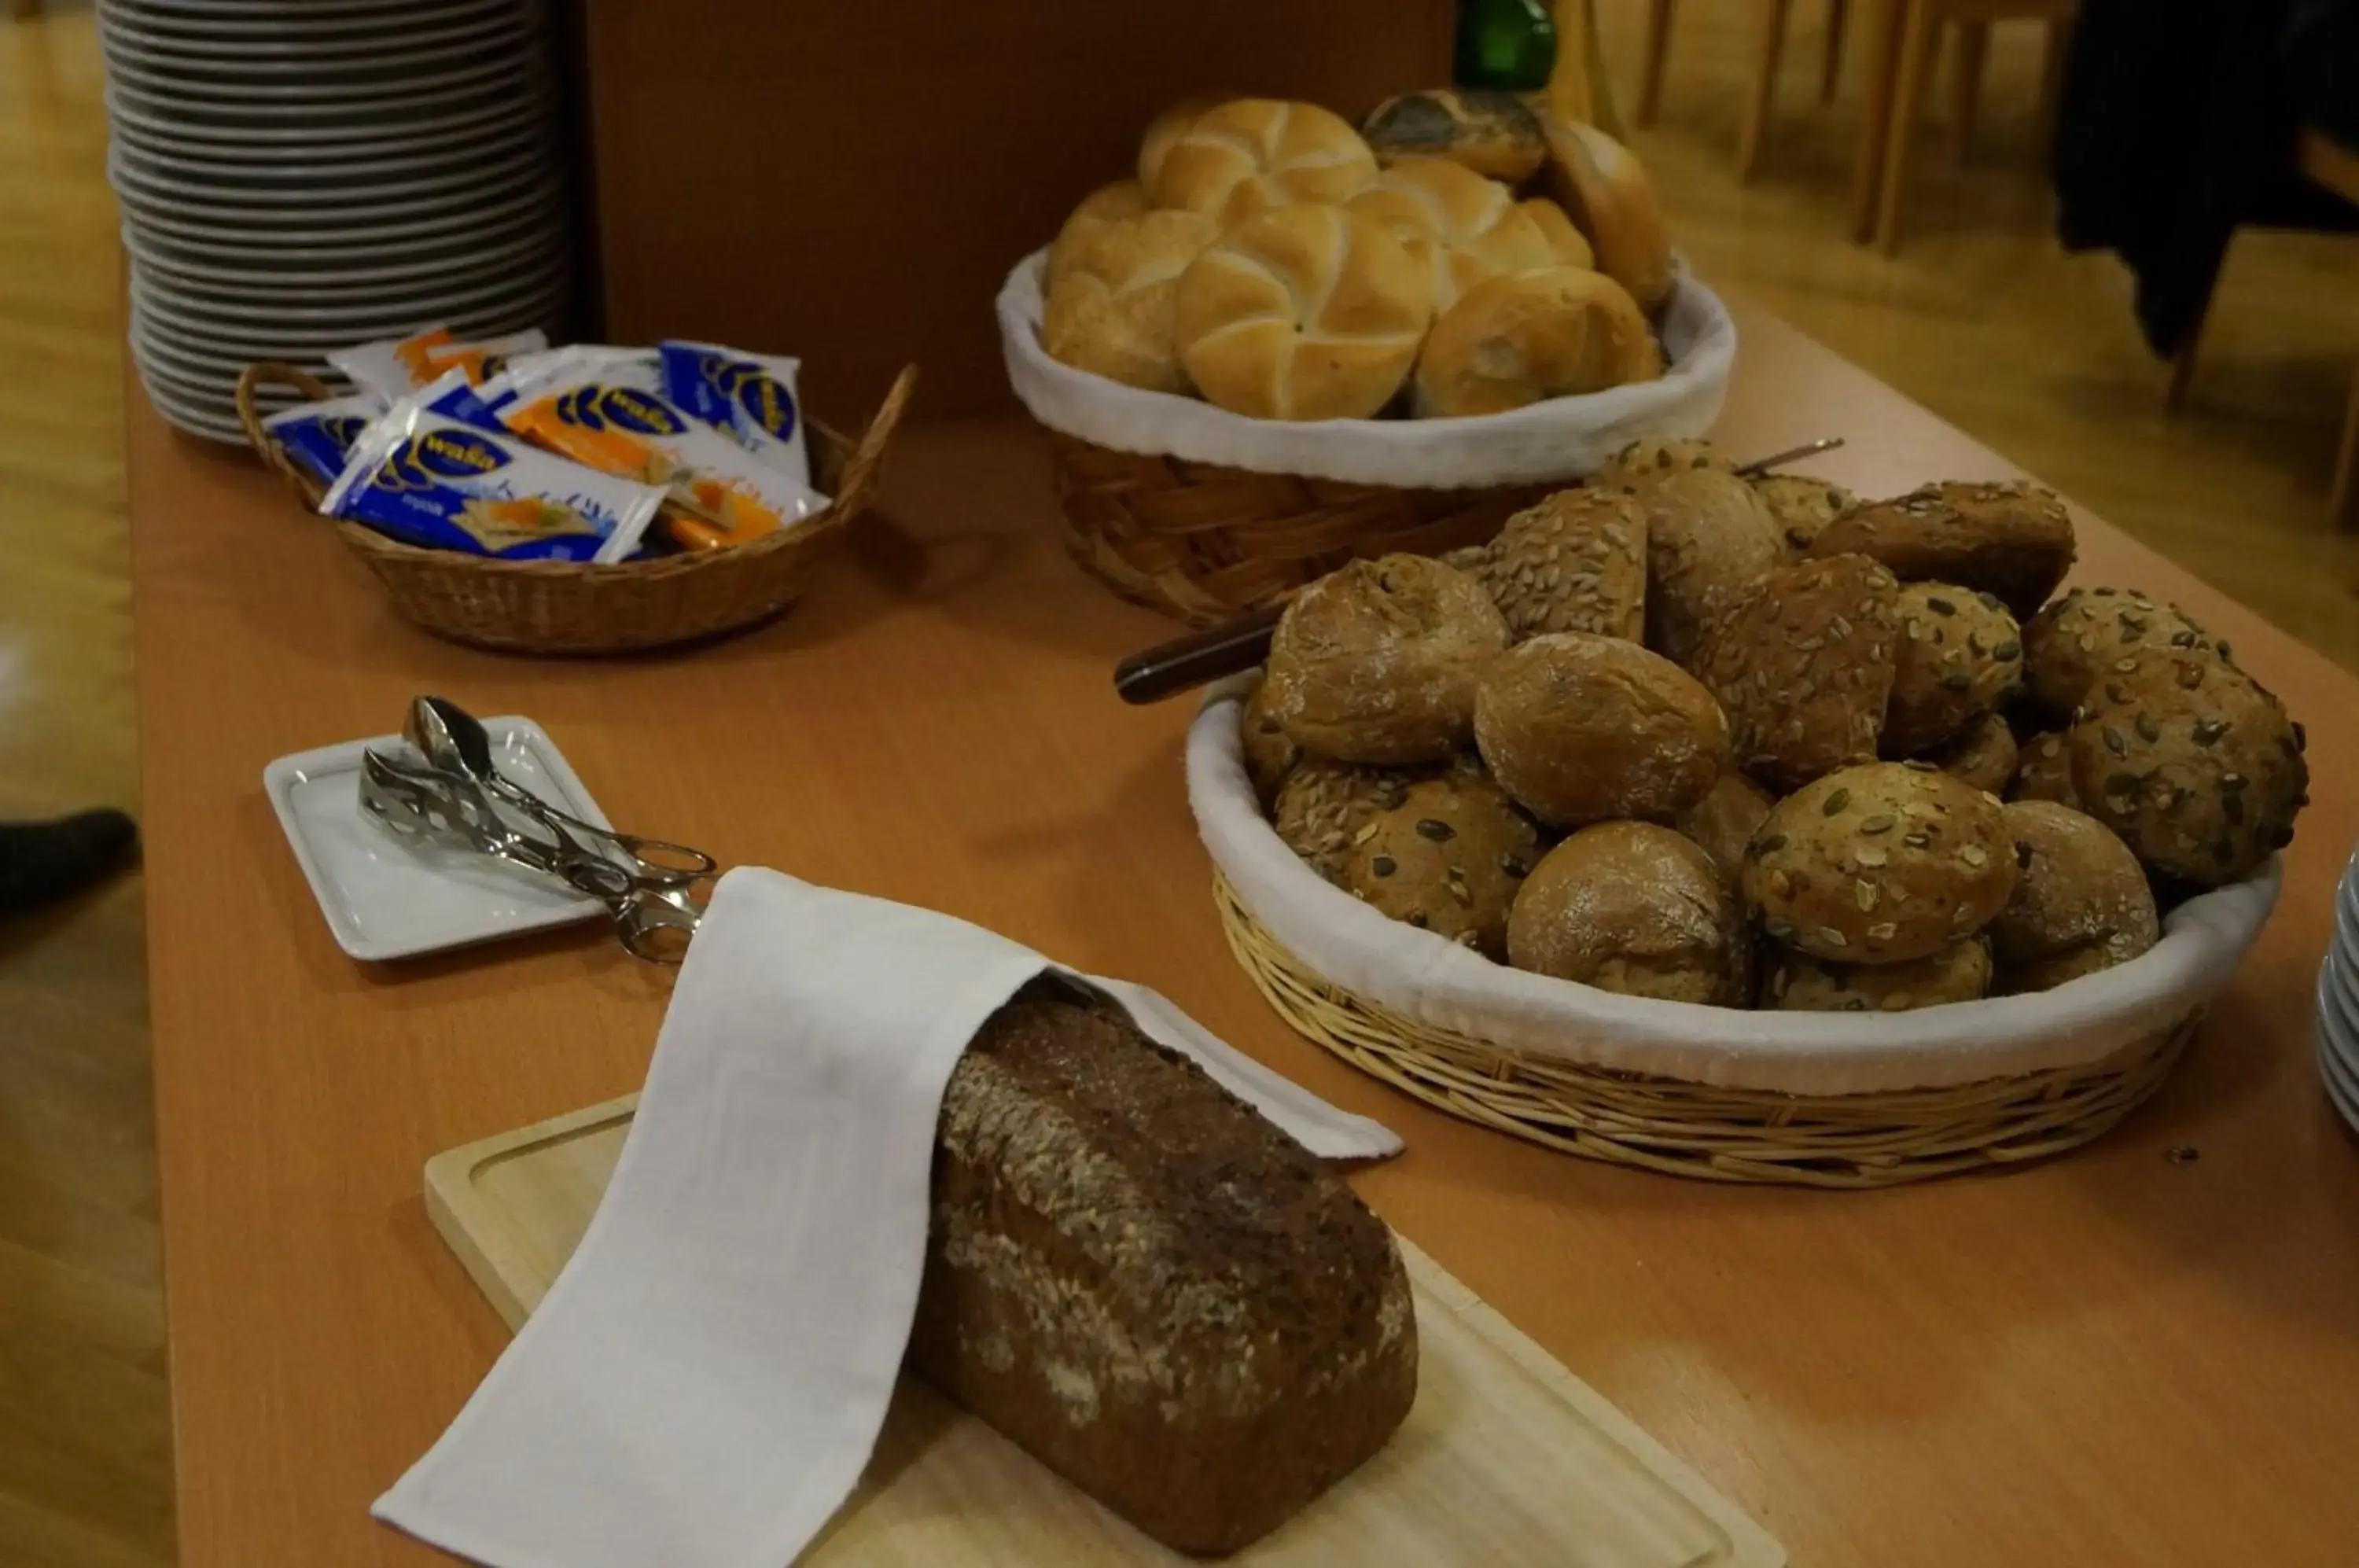 Buffet breakfast in Kloster St. Josef